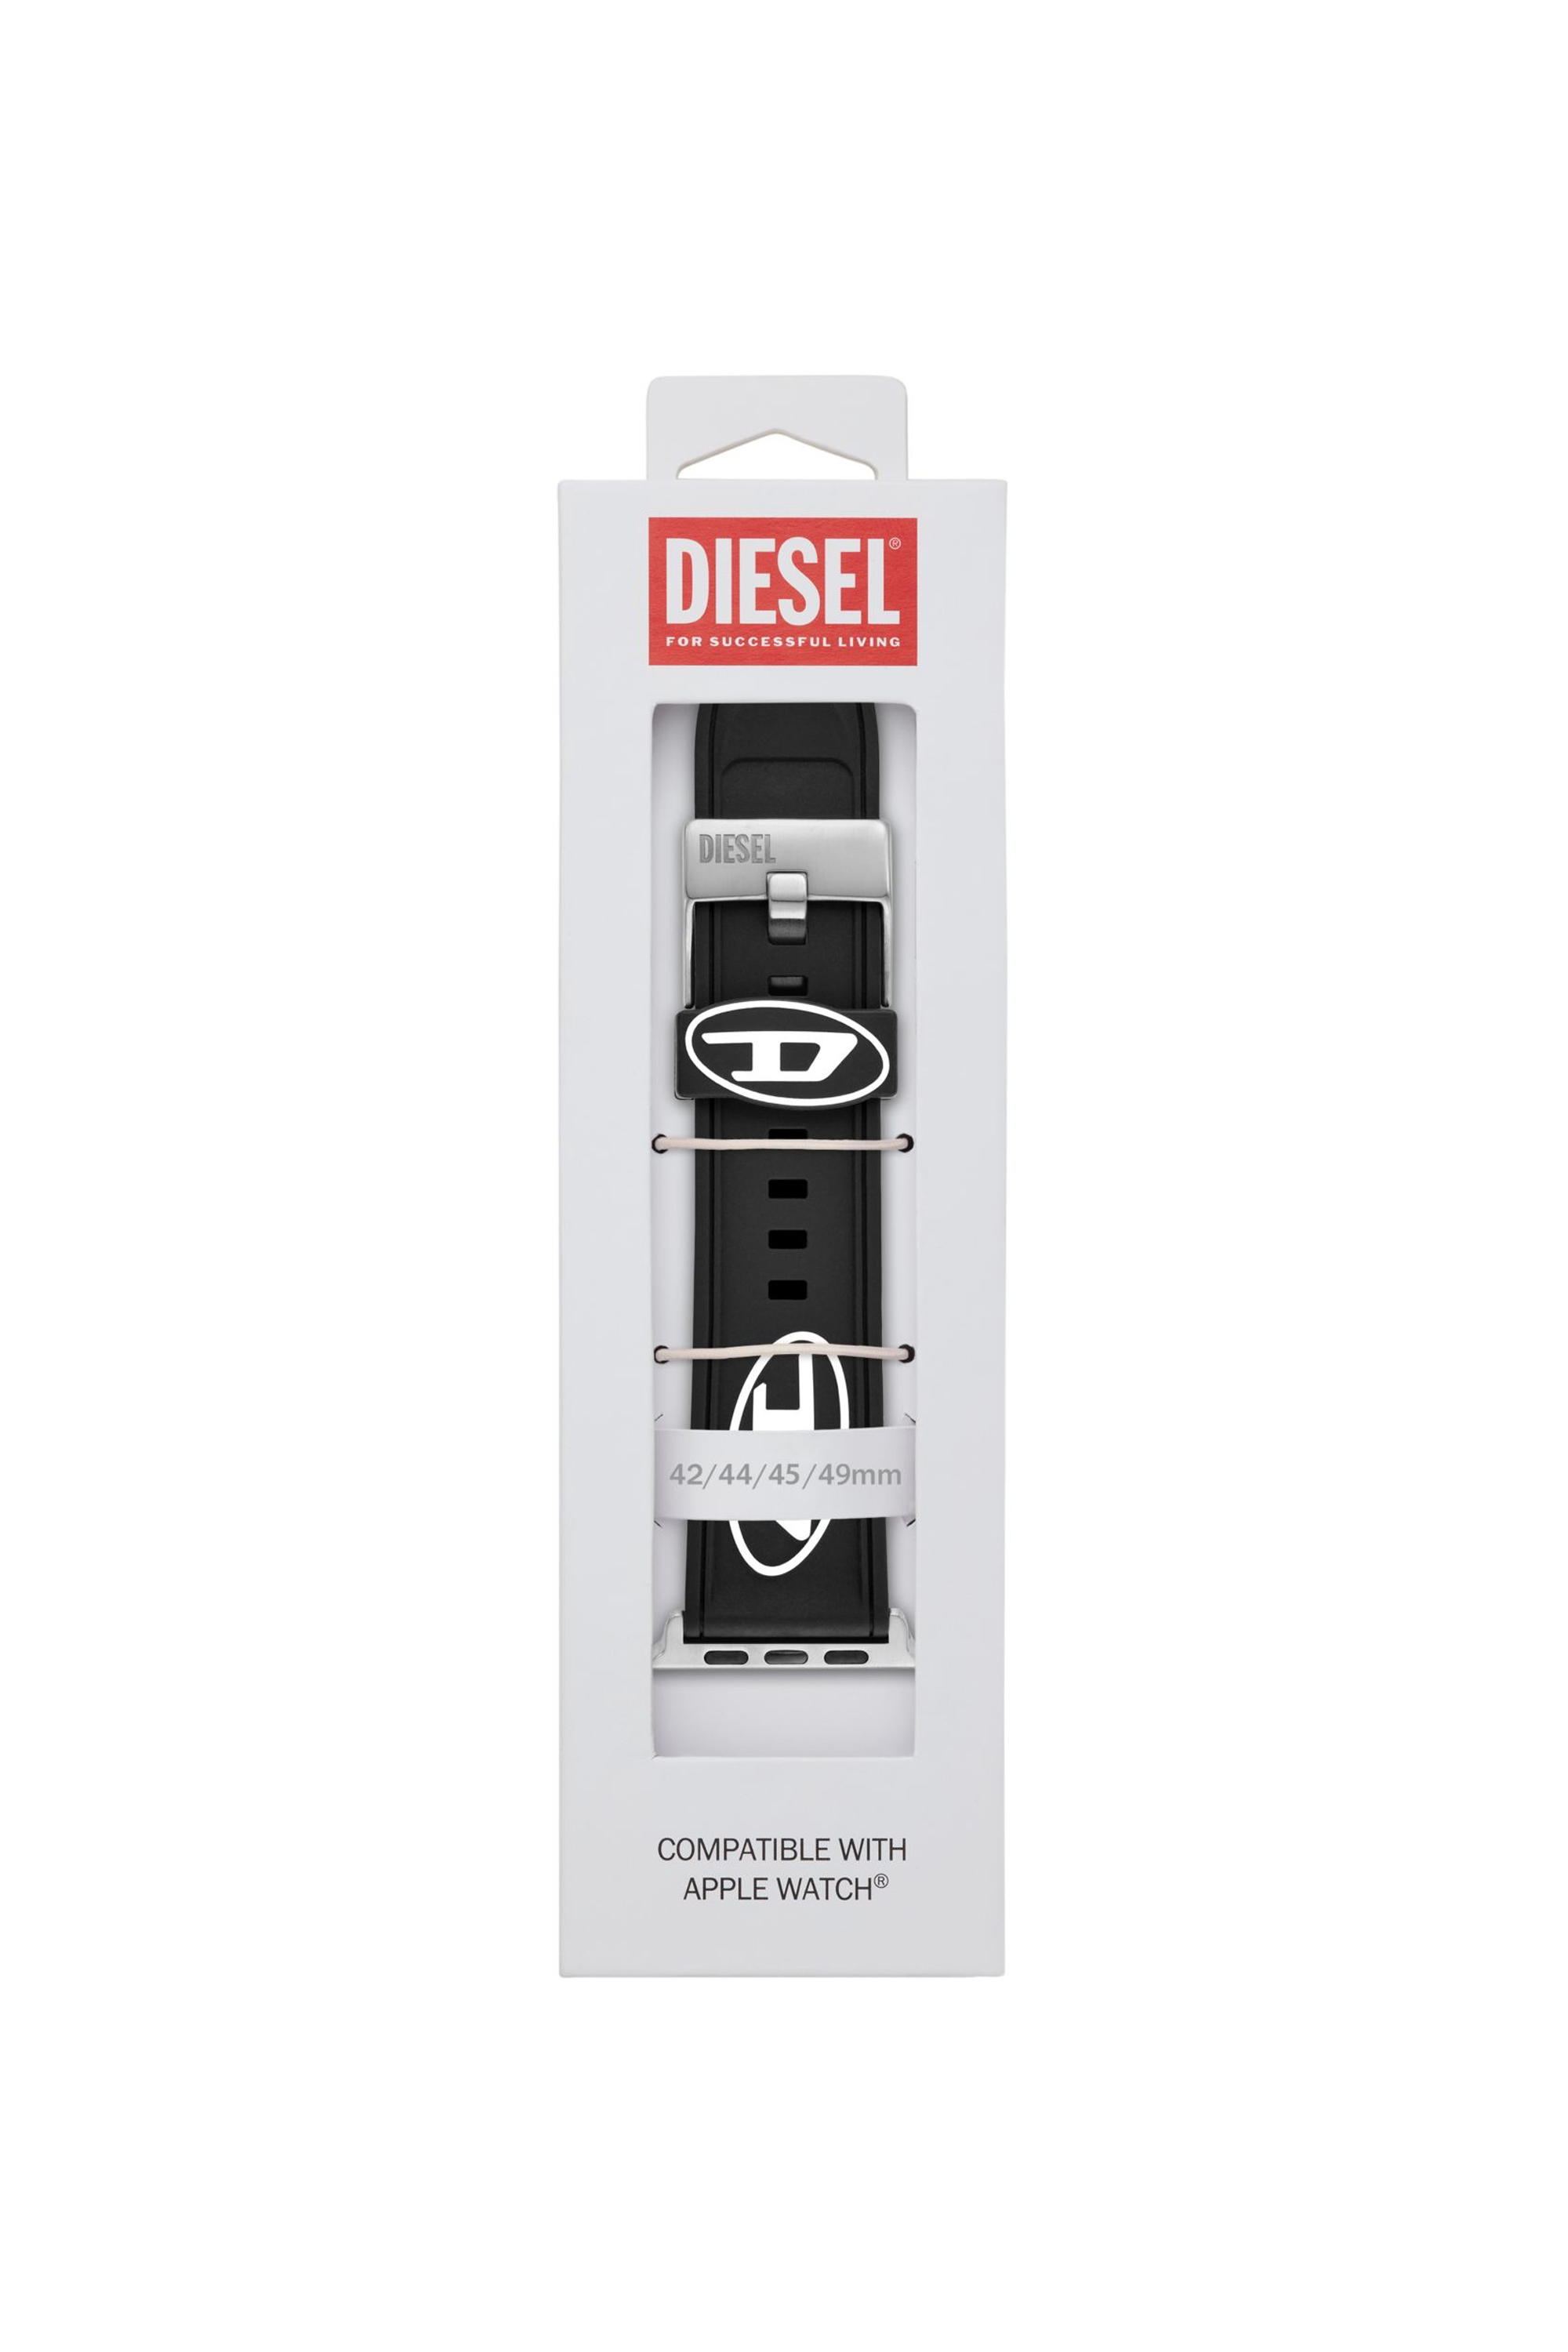 Diesel - DSS0018, Schwarz - Image 3